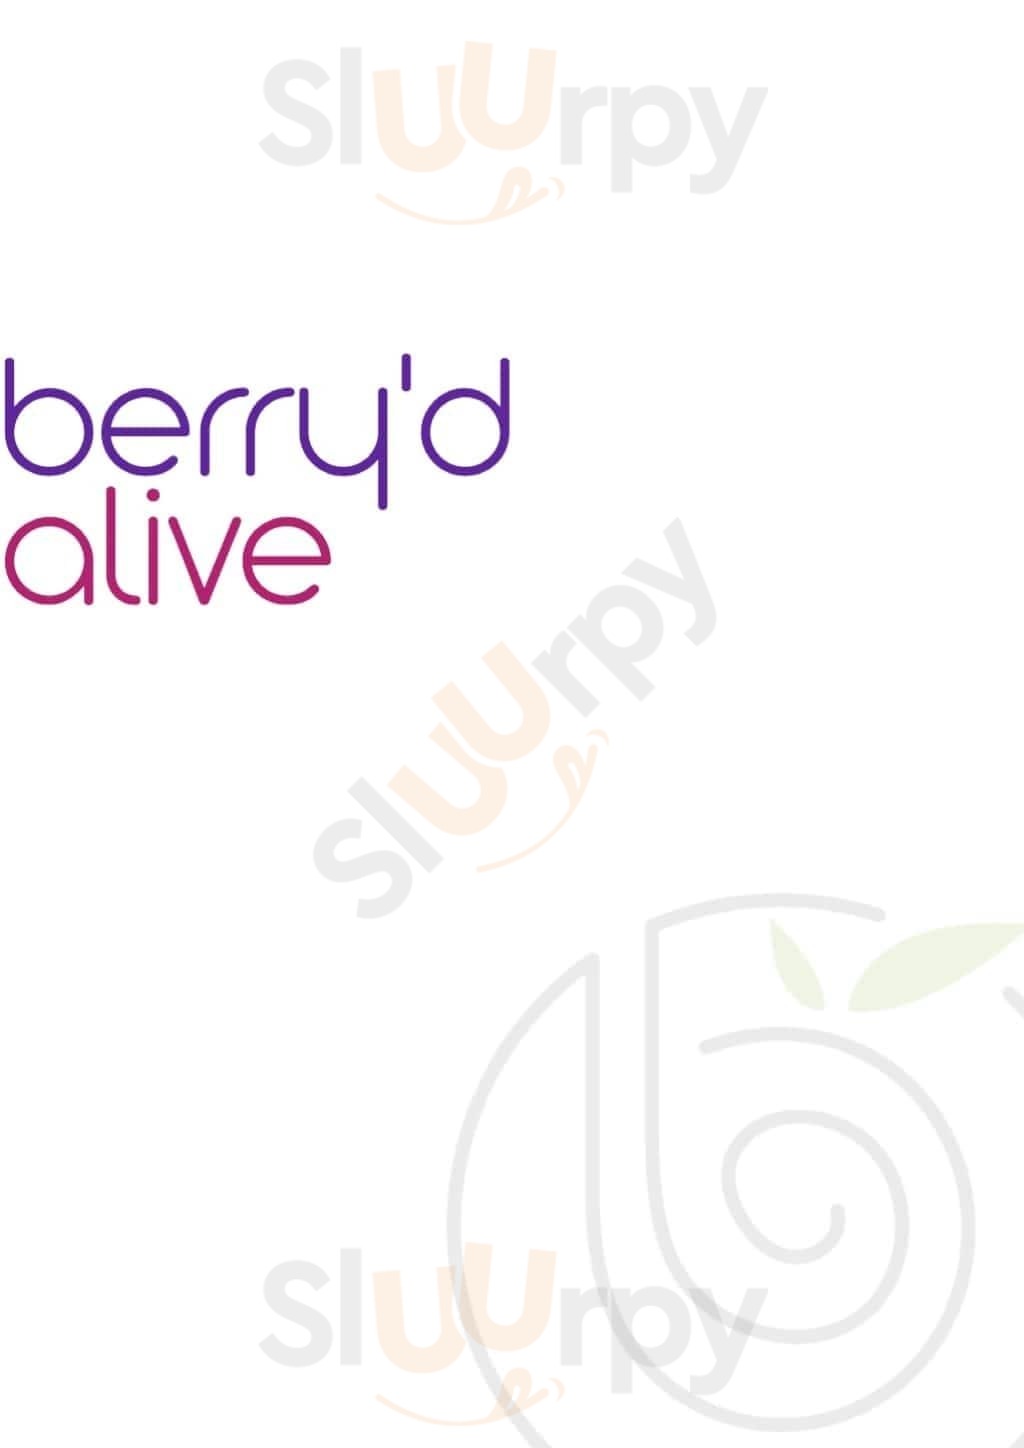 Berry'd Alive Bengaluru Menu - 1